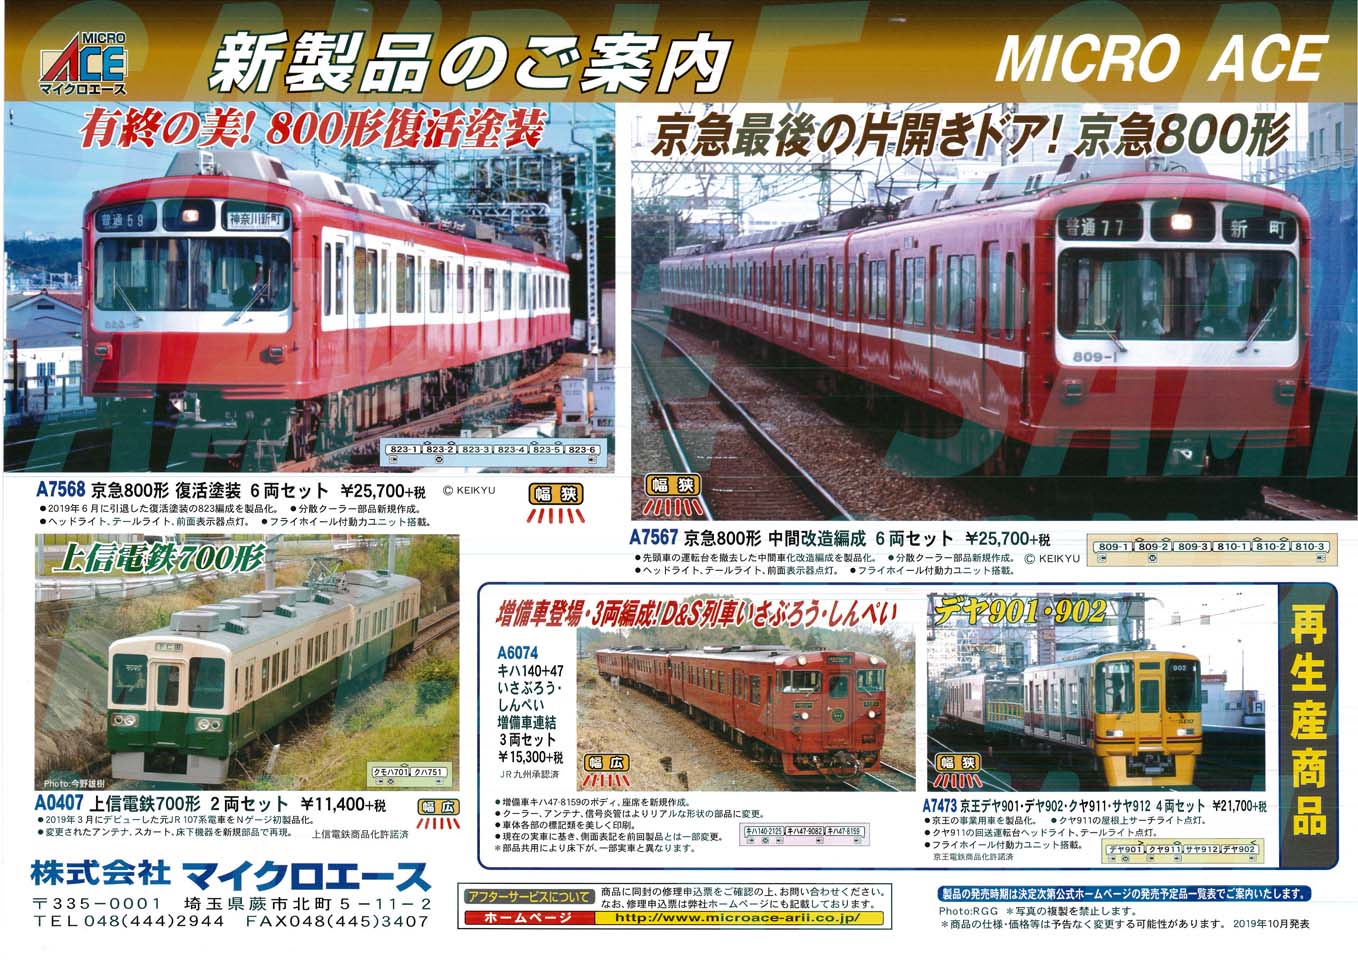 京急 800形 復活塗装 (6両セット) (鉄道模型) - ホビーサーチ 鉄道模型 N